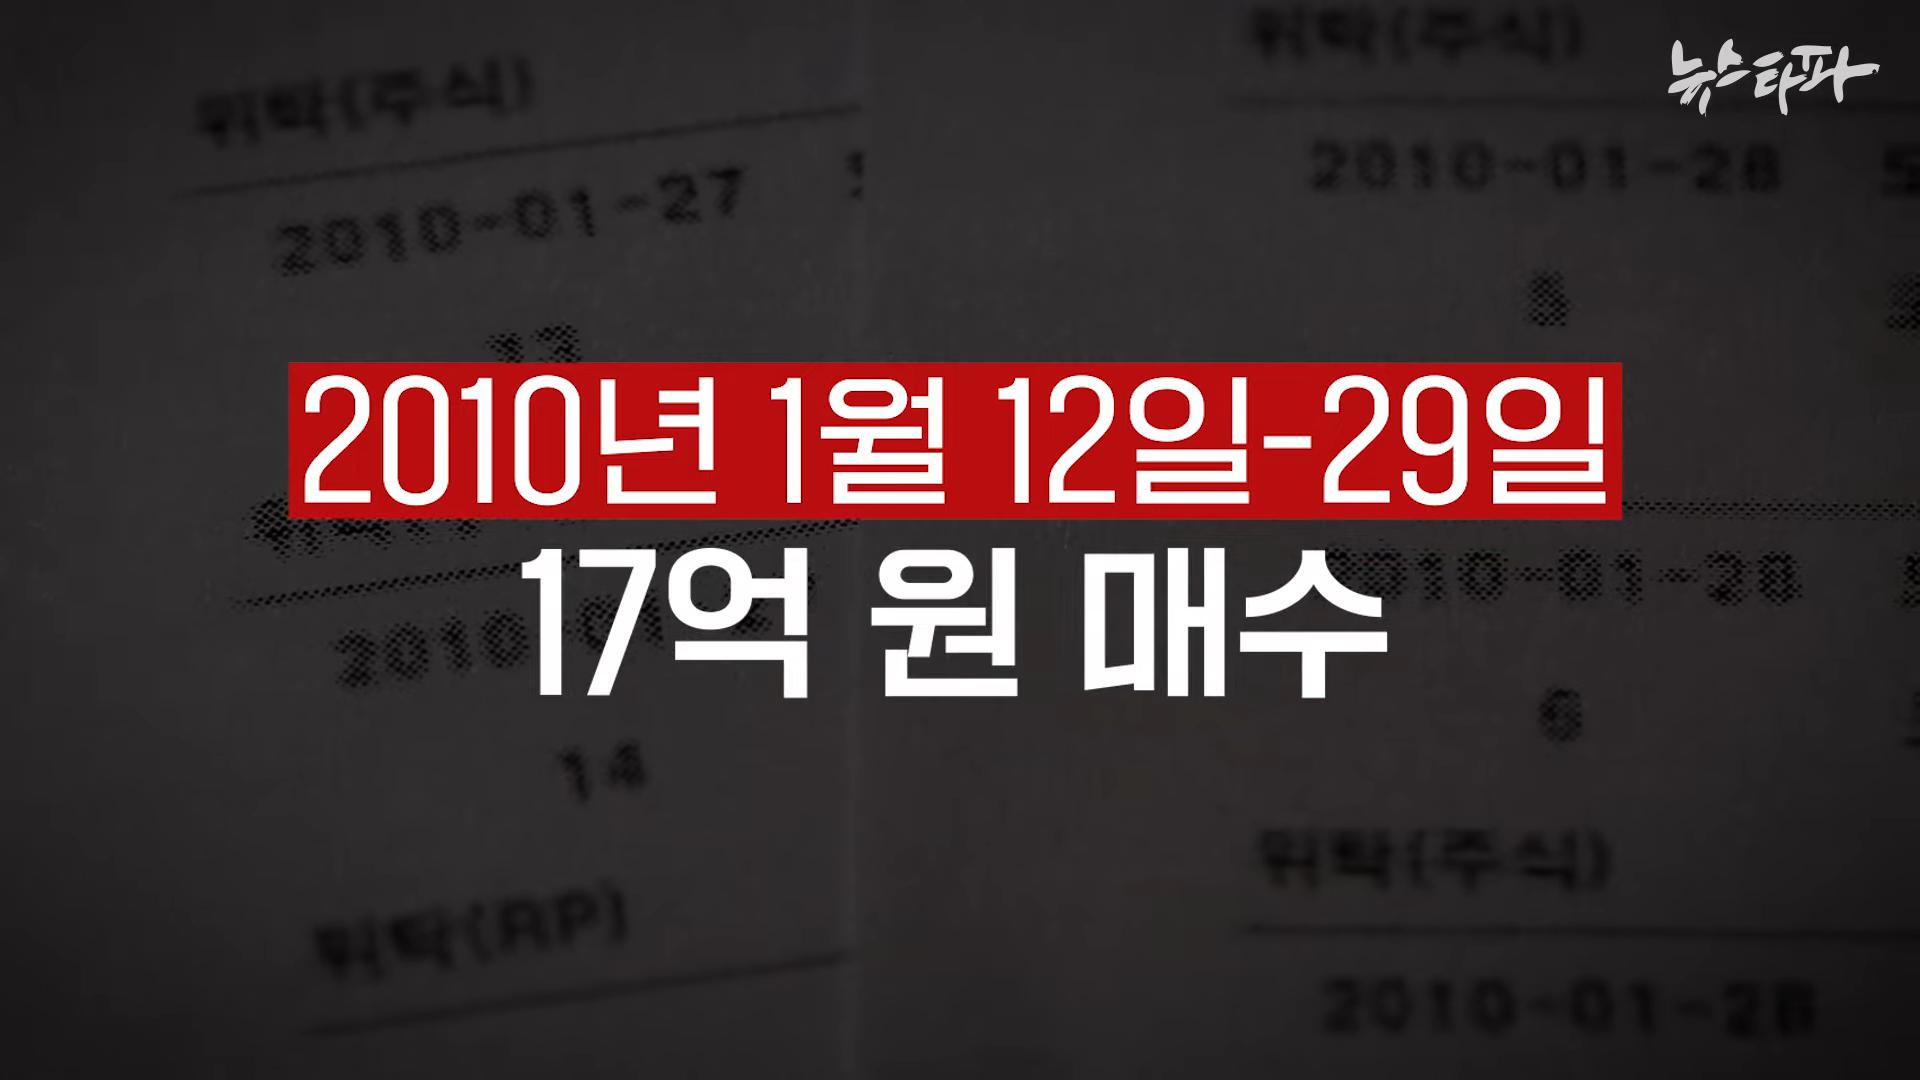 김건희 도이치모터스 녹취록 공개. 대통령 거짓말 드러났다 - 뉴스타파 2-39 screenshot.png.jpg